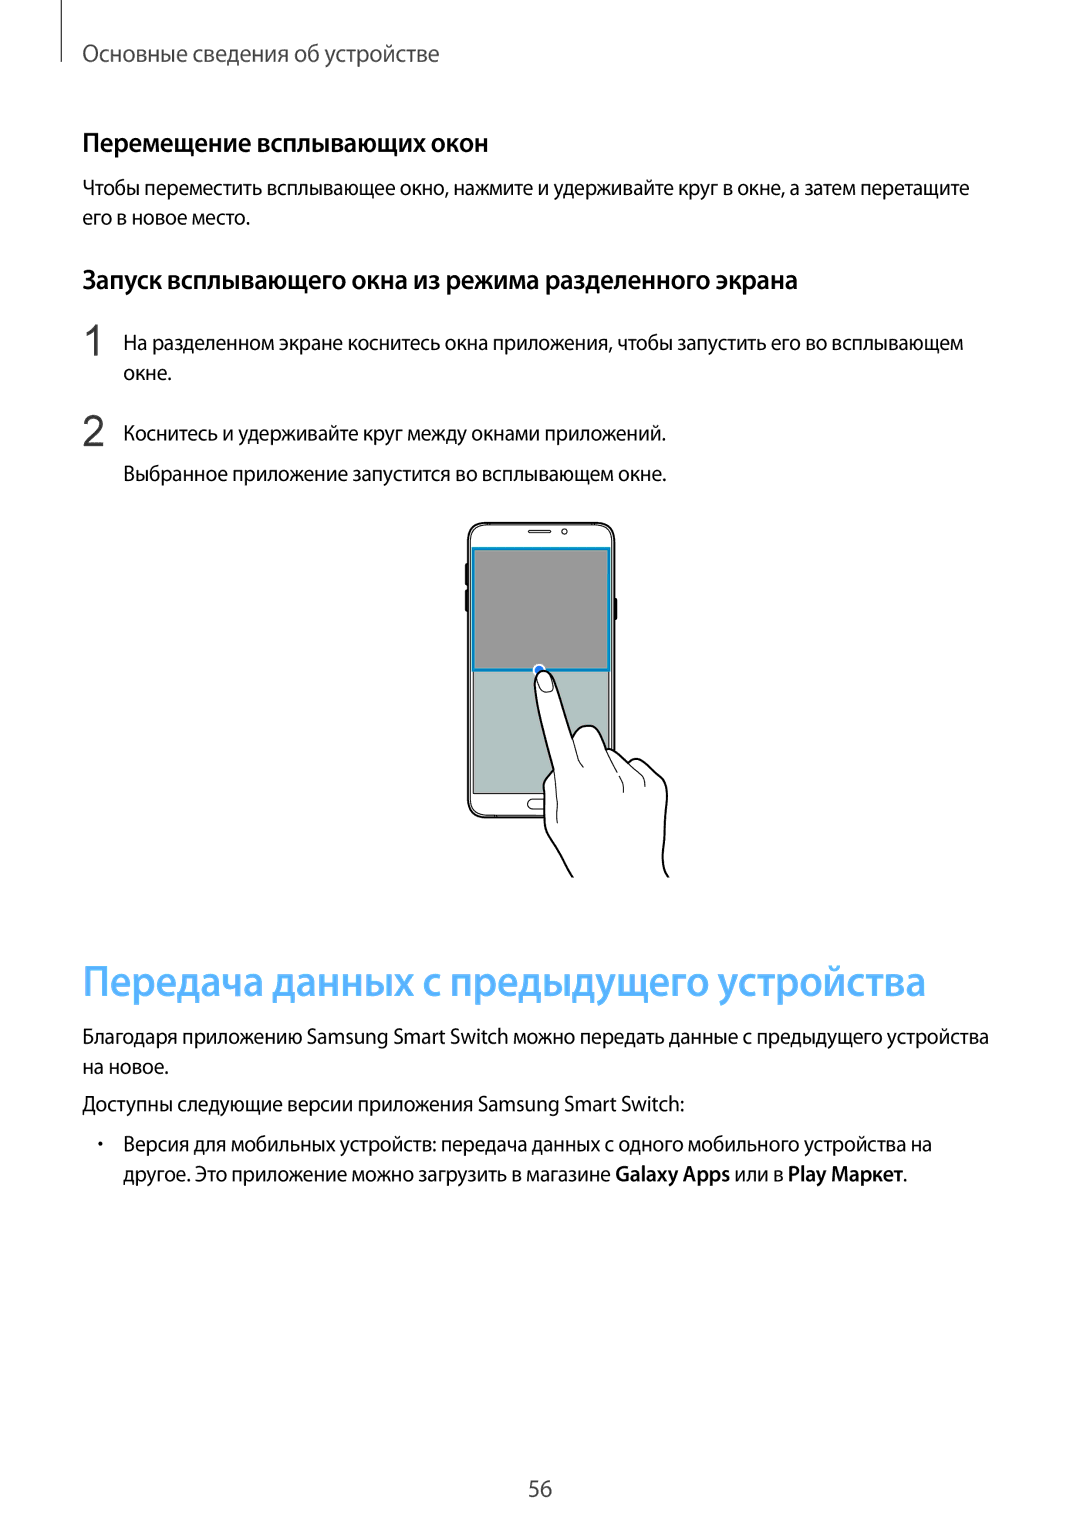 Samsung SM-N920CEDESER manual Перемещение всплывающих окон, Запуск всплывающего окна из режима разделенного экрана, Окне 